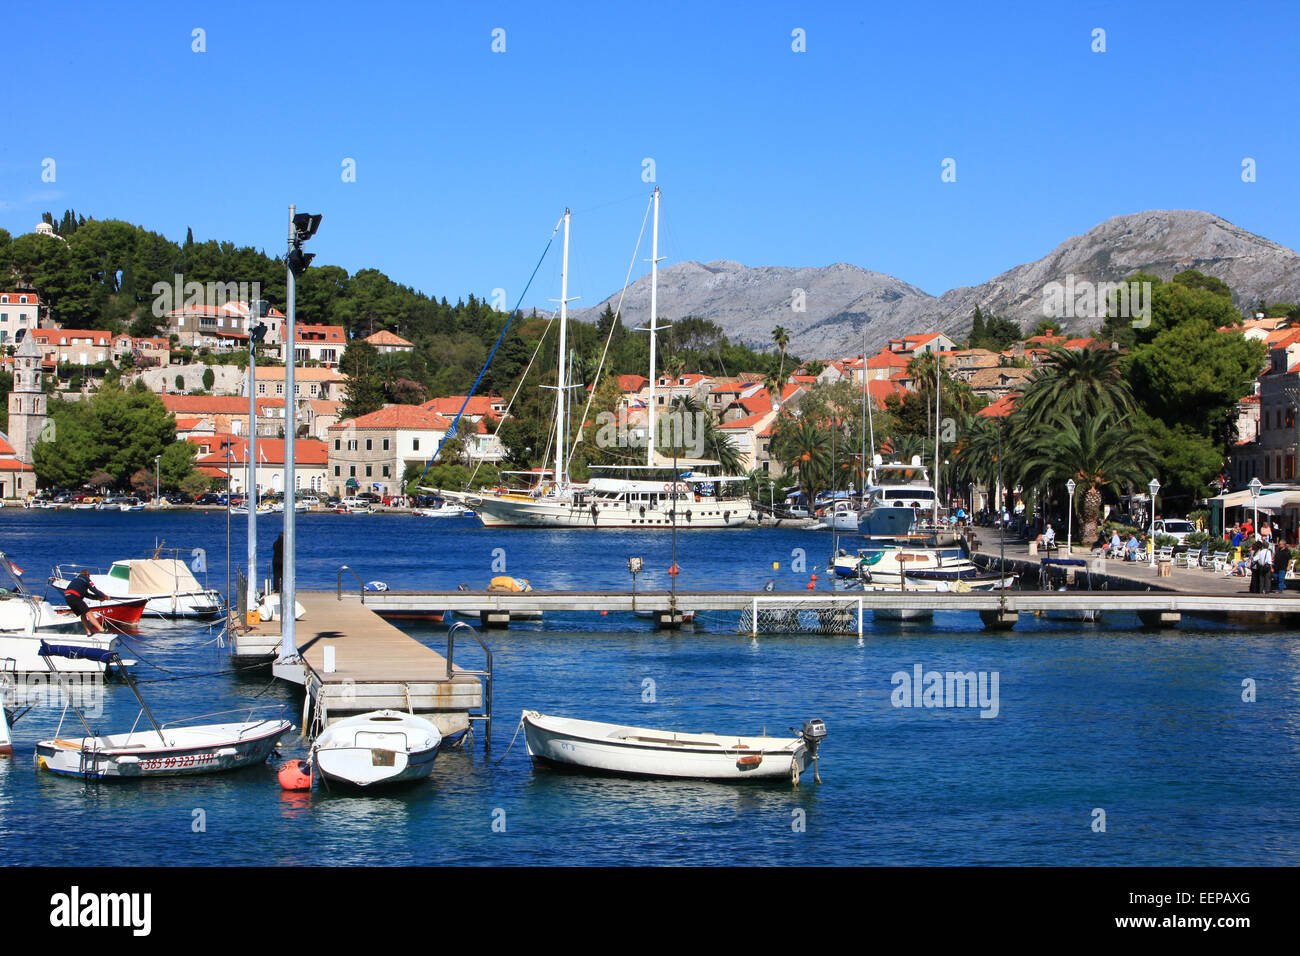 Cavtat, Hafen, Kroatien mit Booten im Hafen und Yachten auf dem Meer Wandervorführung; Mitteleuropa und dem Mittelmeer. Stockfoto